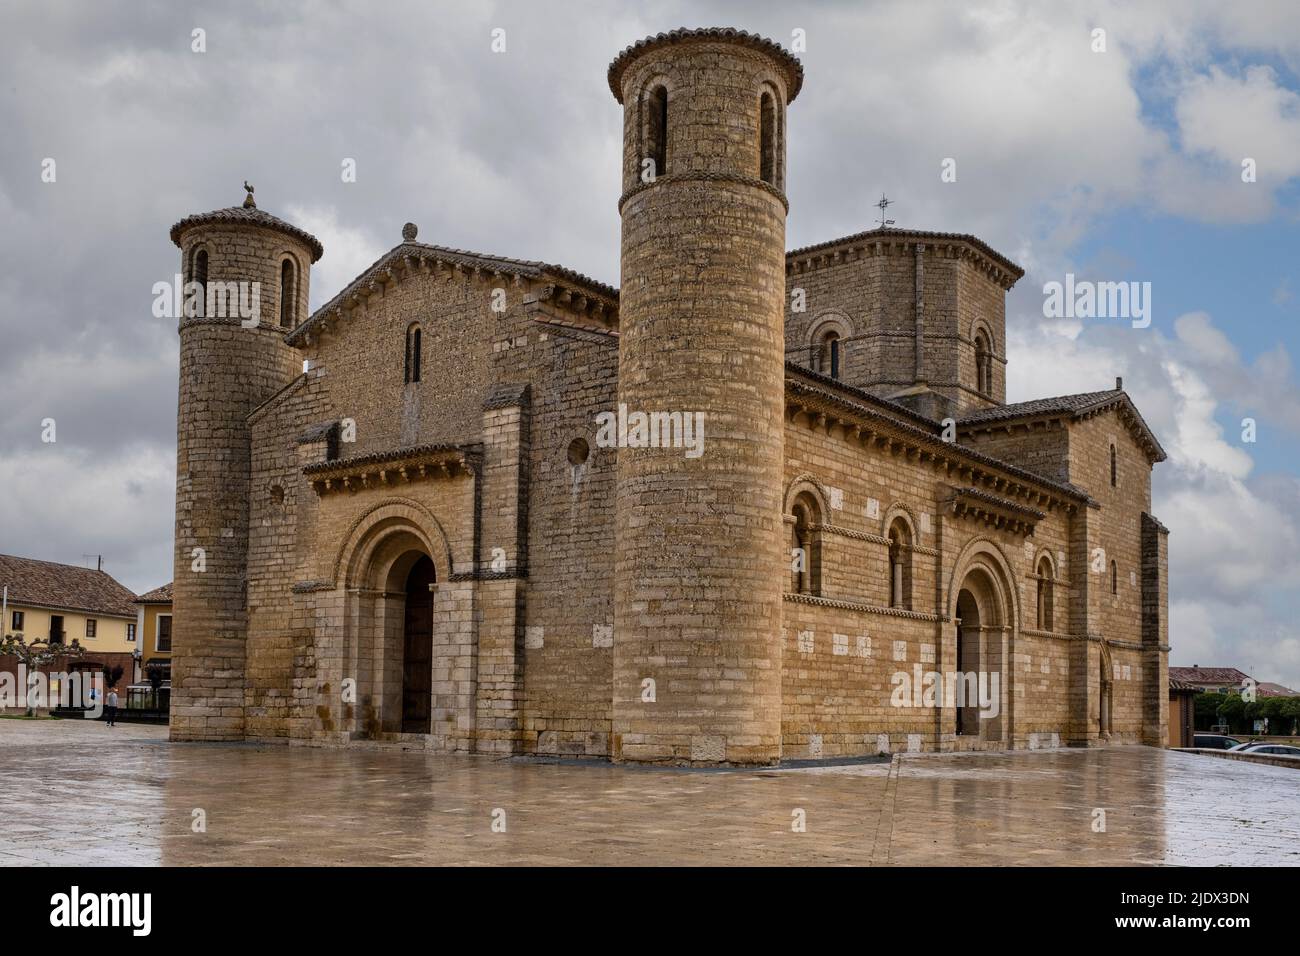 Spain, Castilla y Leon, Fromista. Church of Saint Martin of Tours, Romanesque, 11th Century. Stock Photo